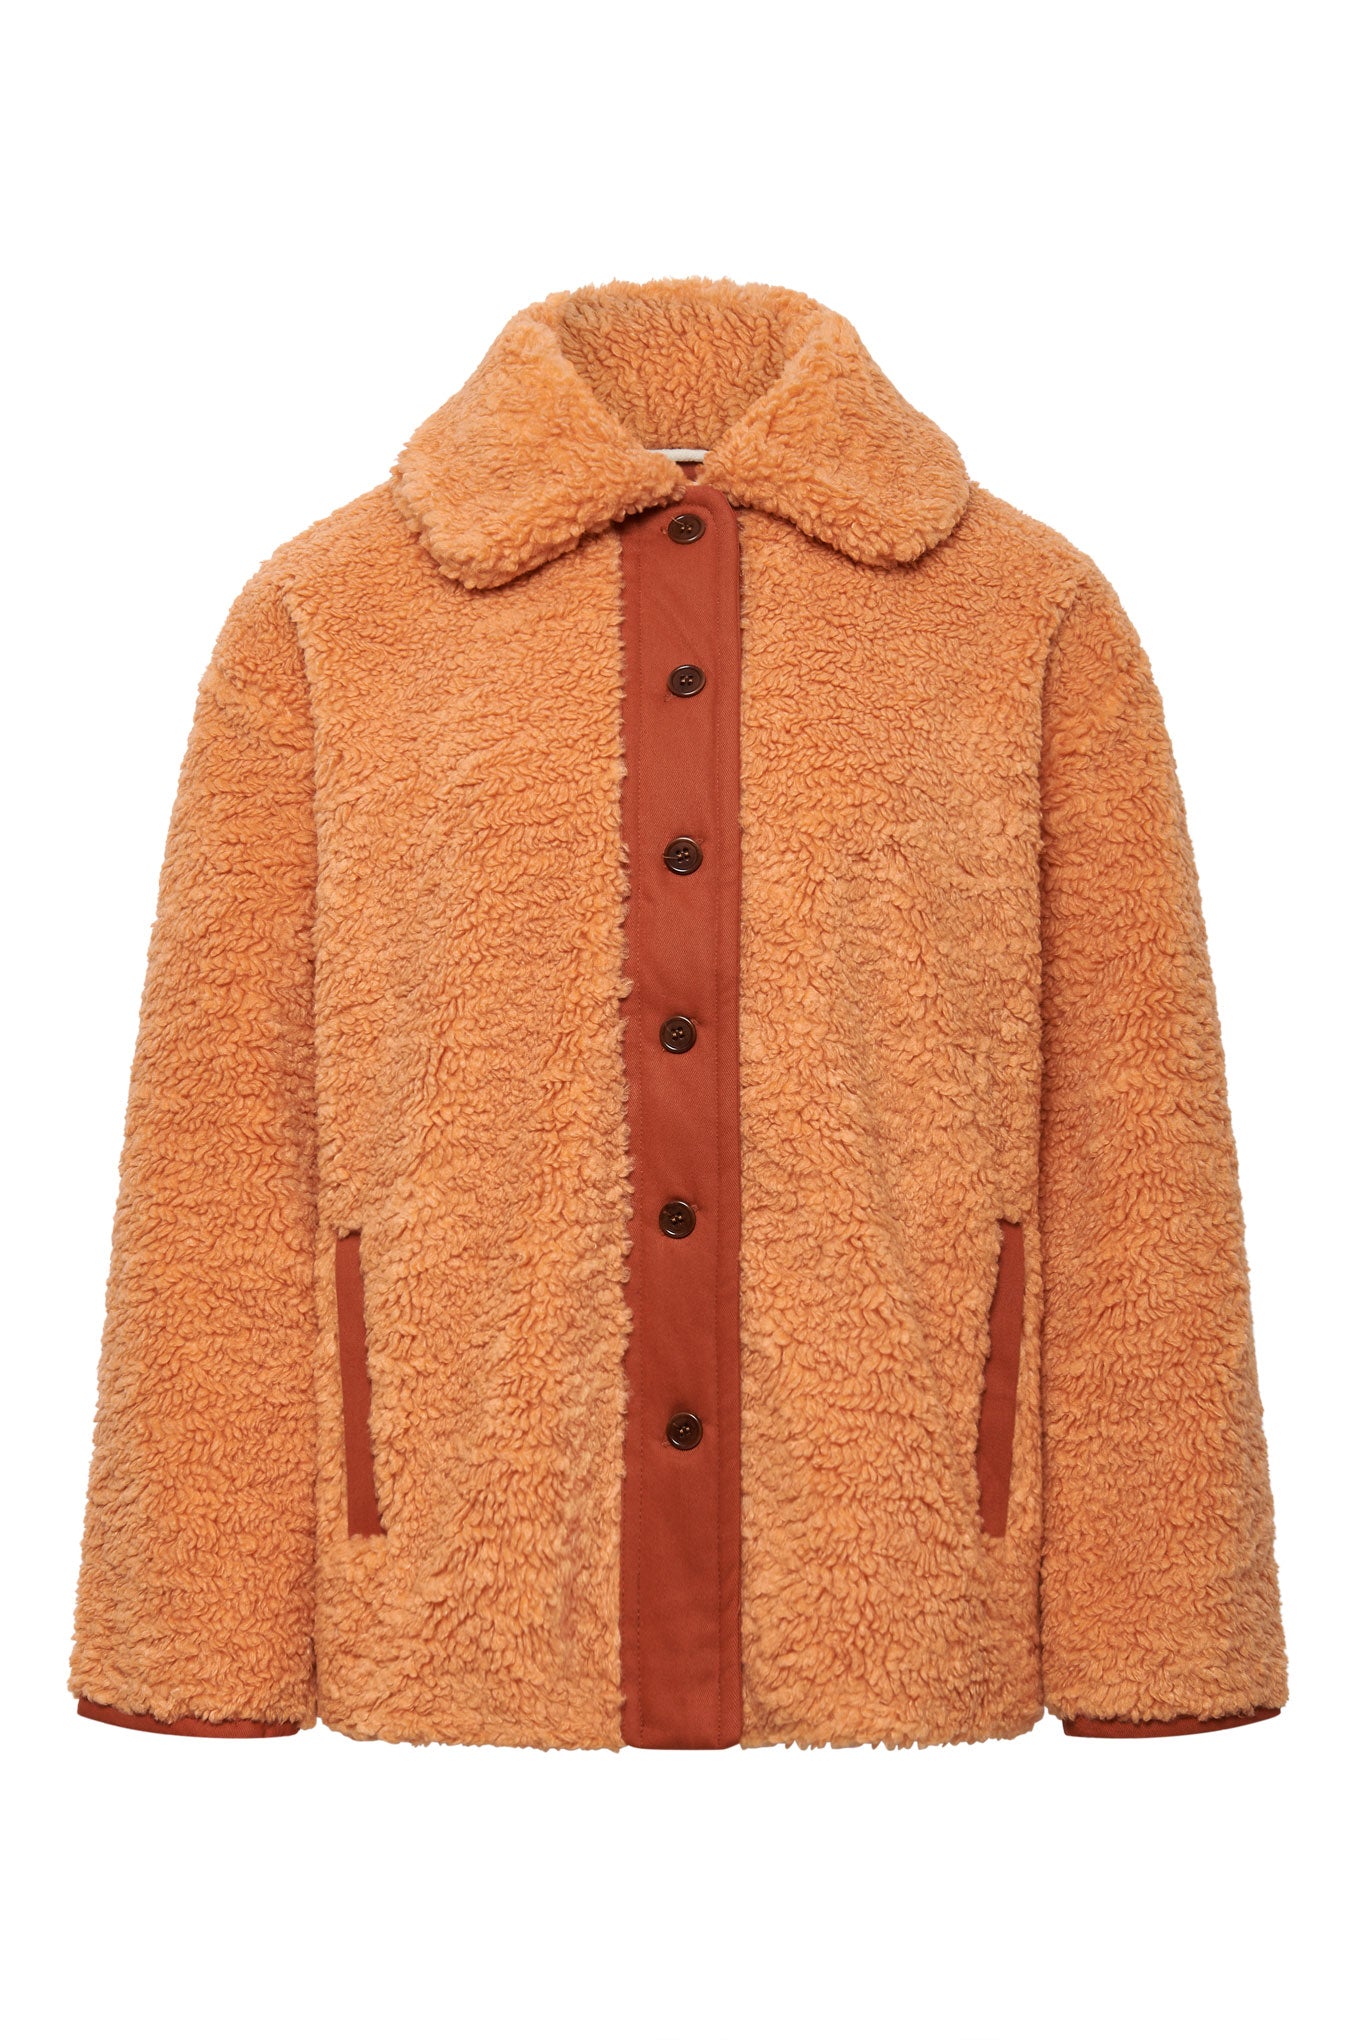 LEXI - Recycled PET Fleece Coat Soft Orange